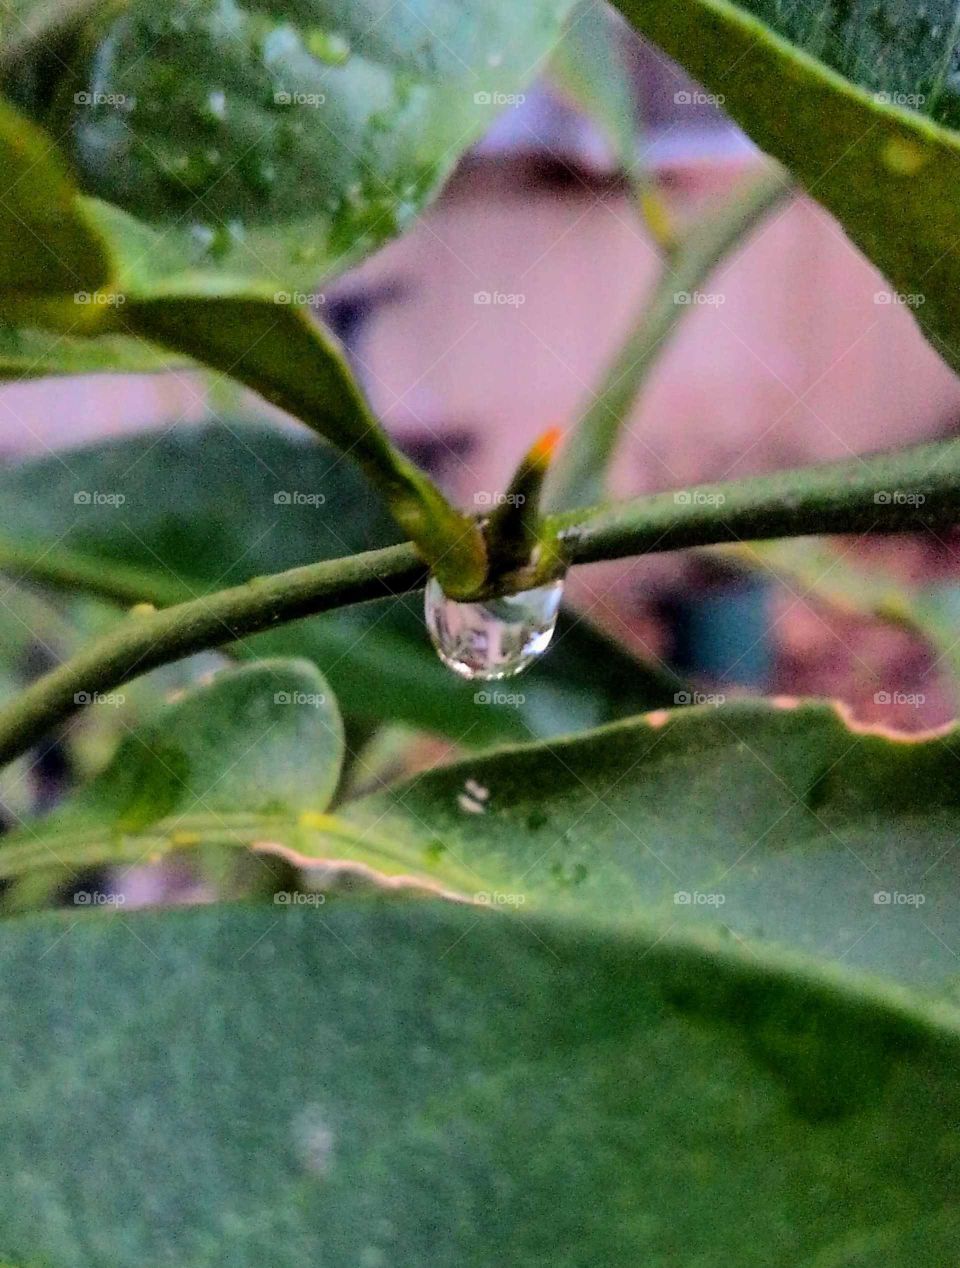 a drop